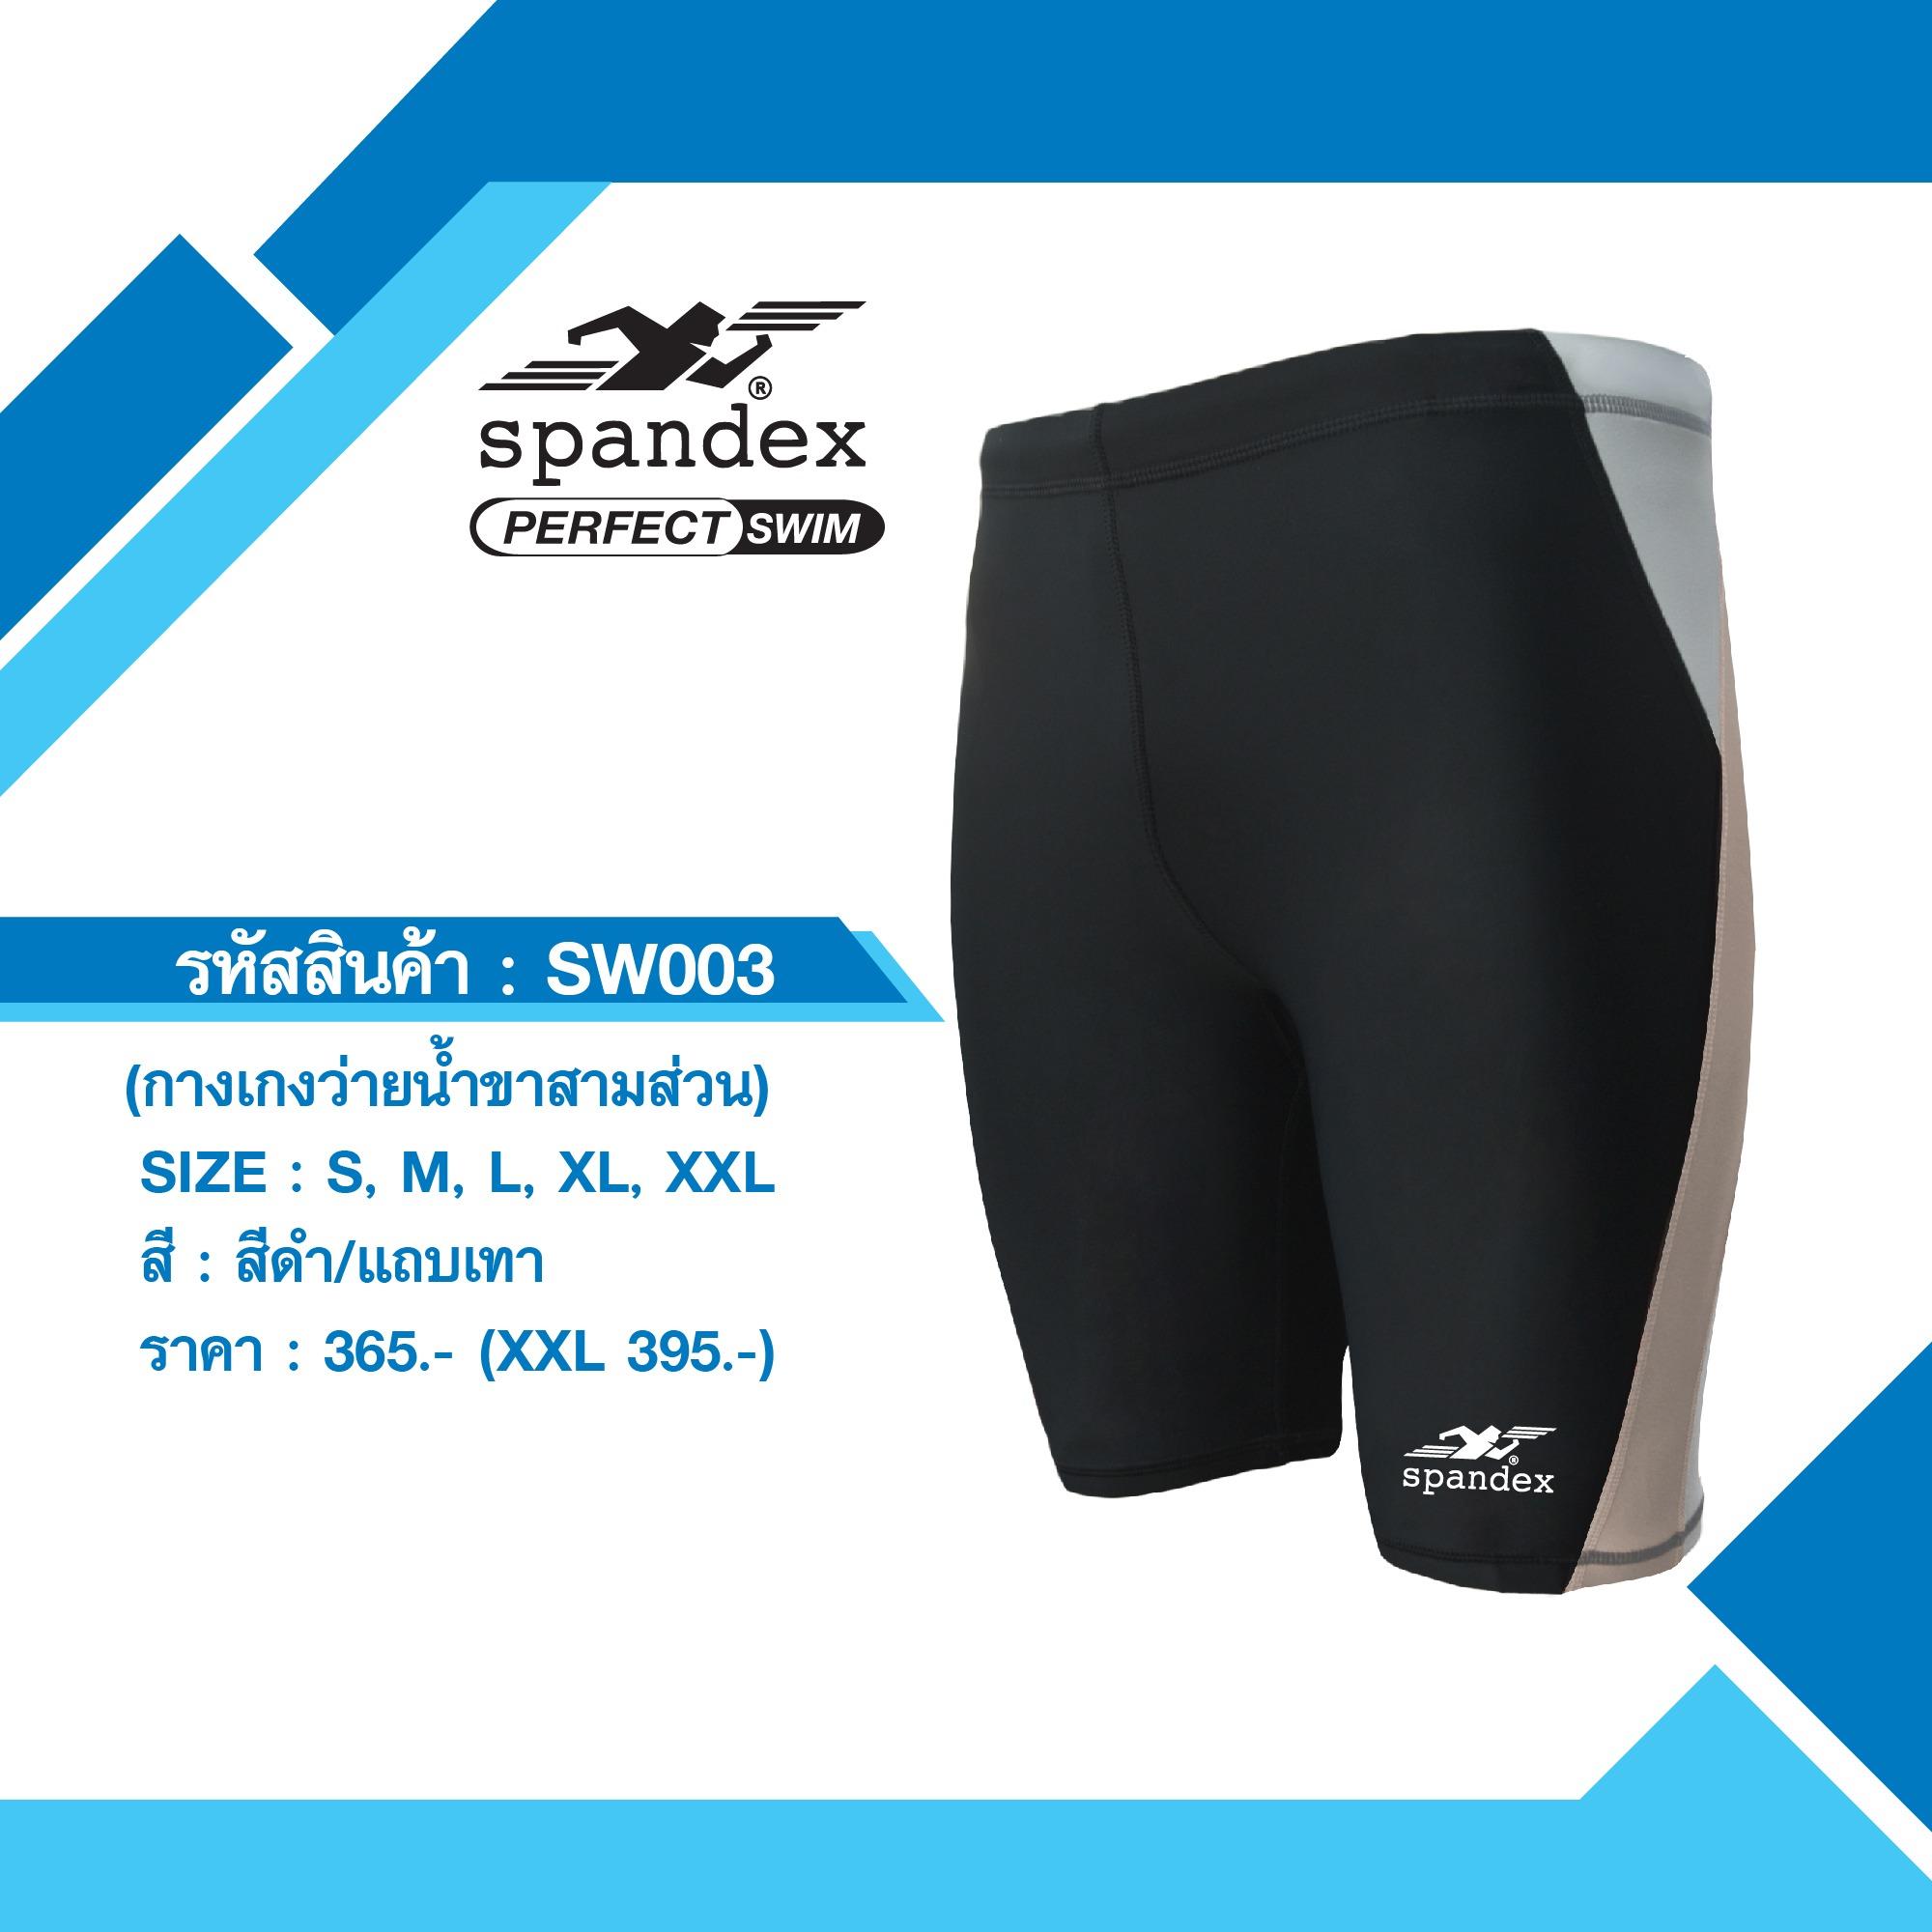 Spandex SW003 กางเกงว่ายน้ำขาสามส่วน สีดำ/แถบเทา